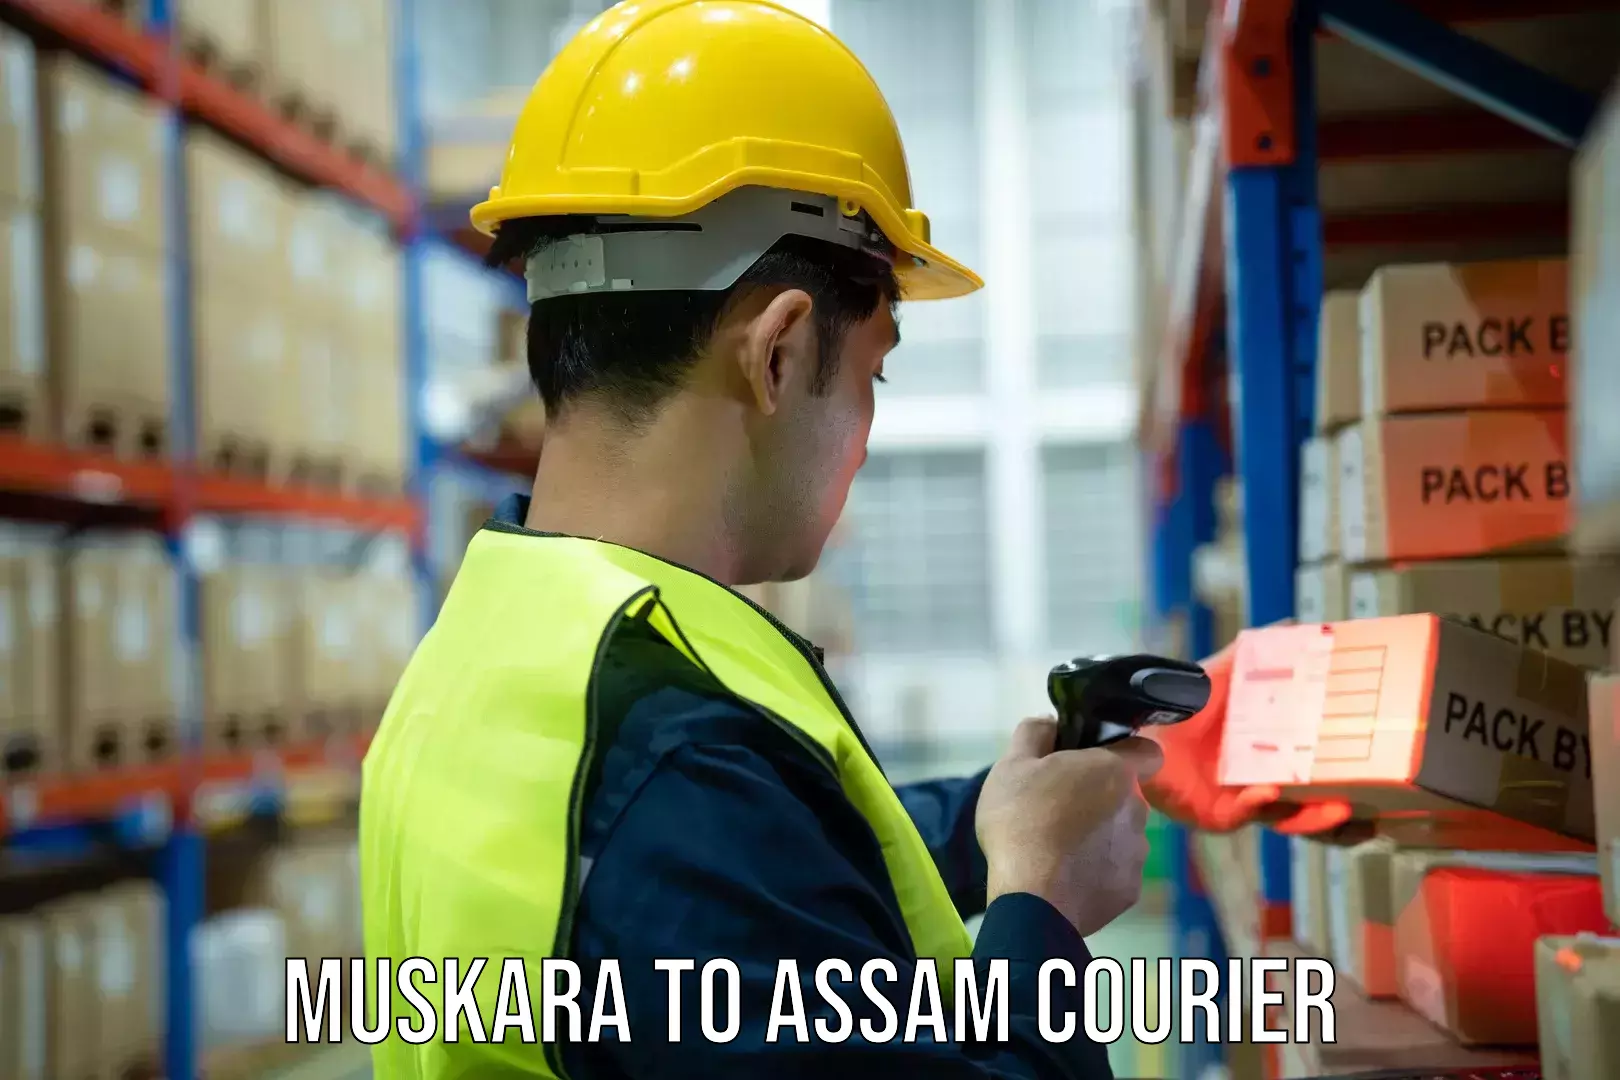 Global courier networks Muskara to Assam